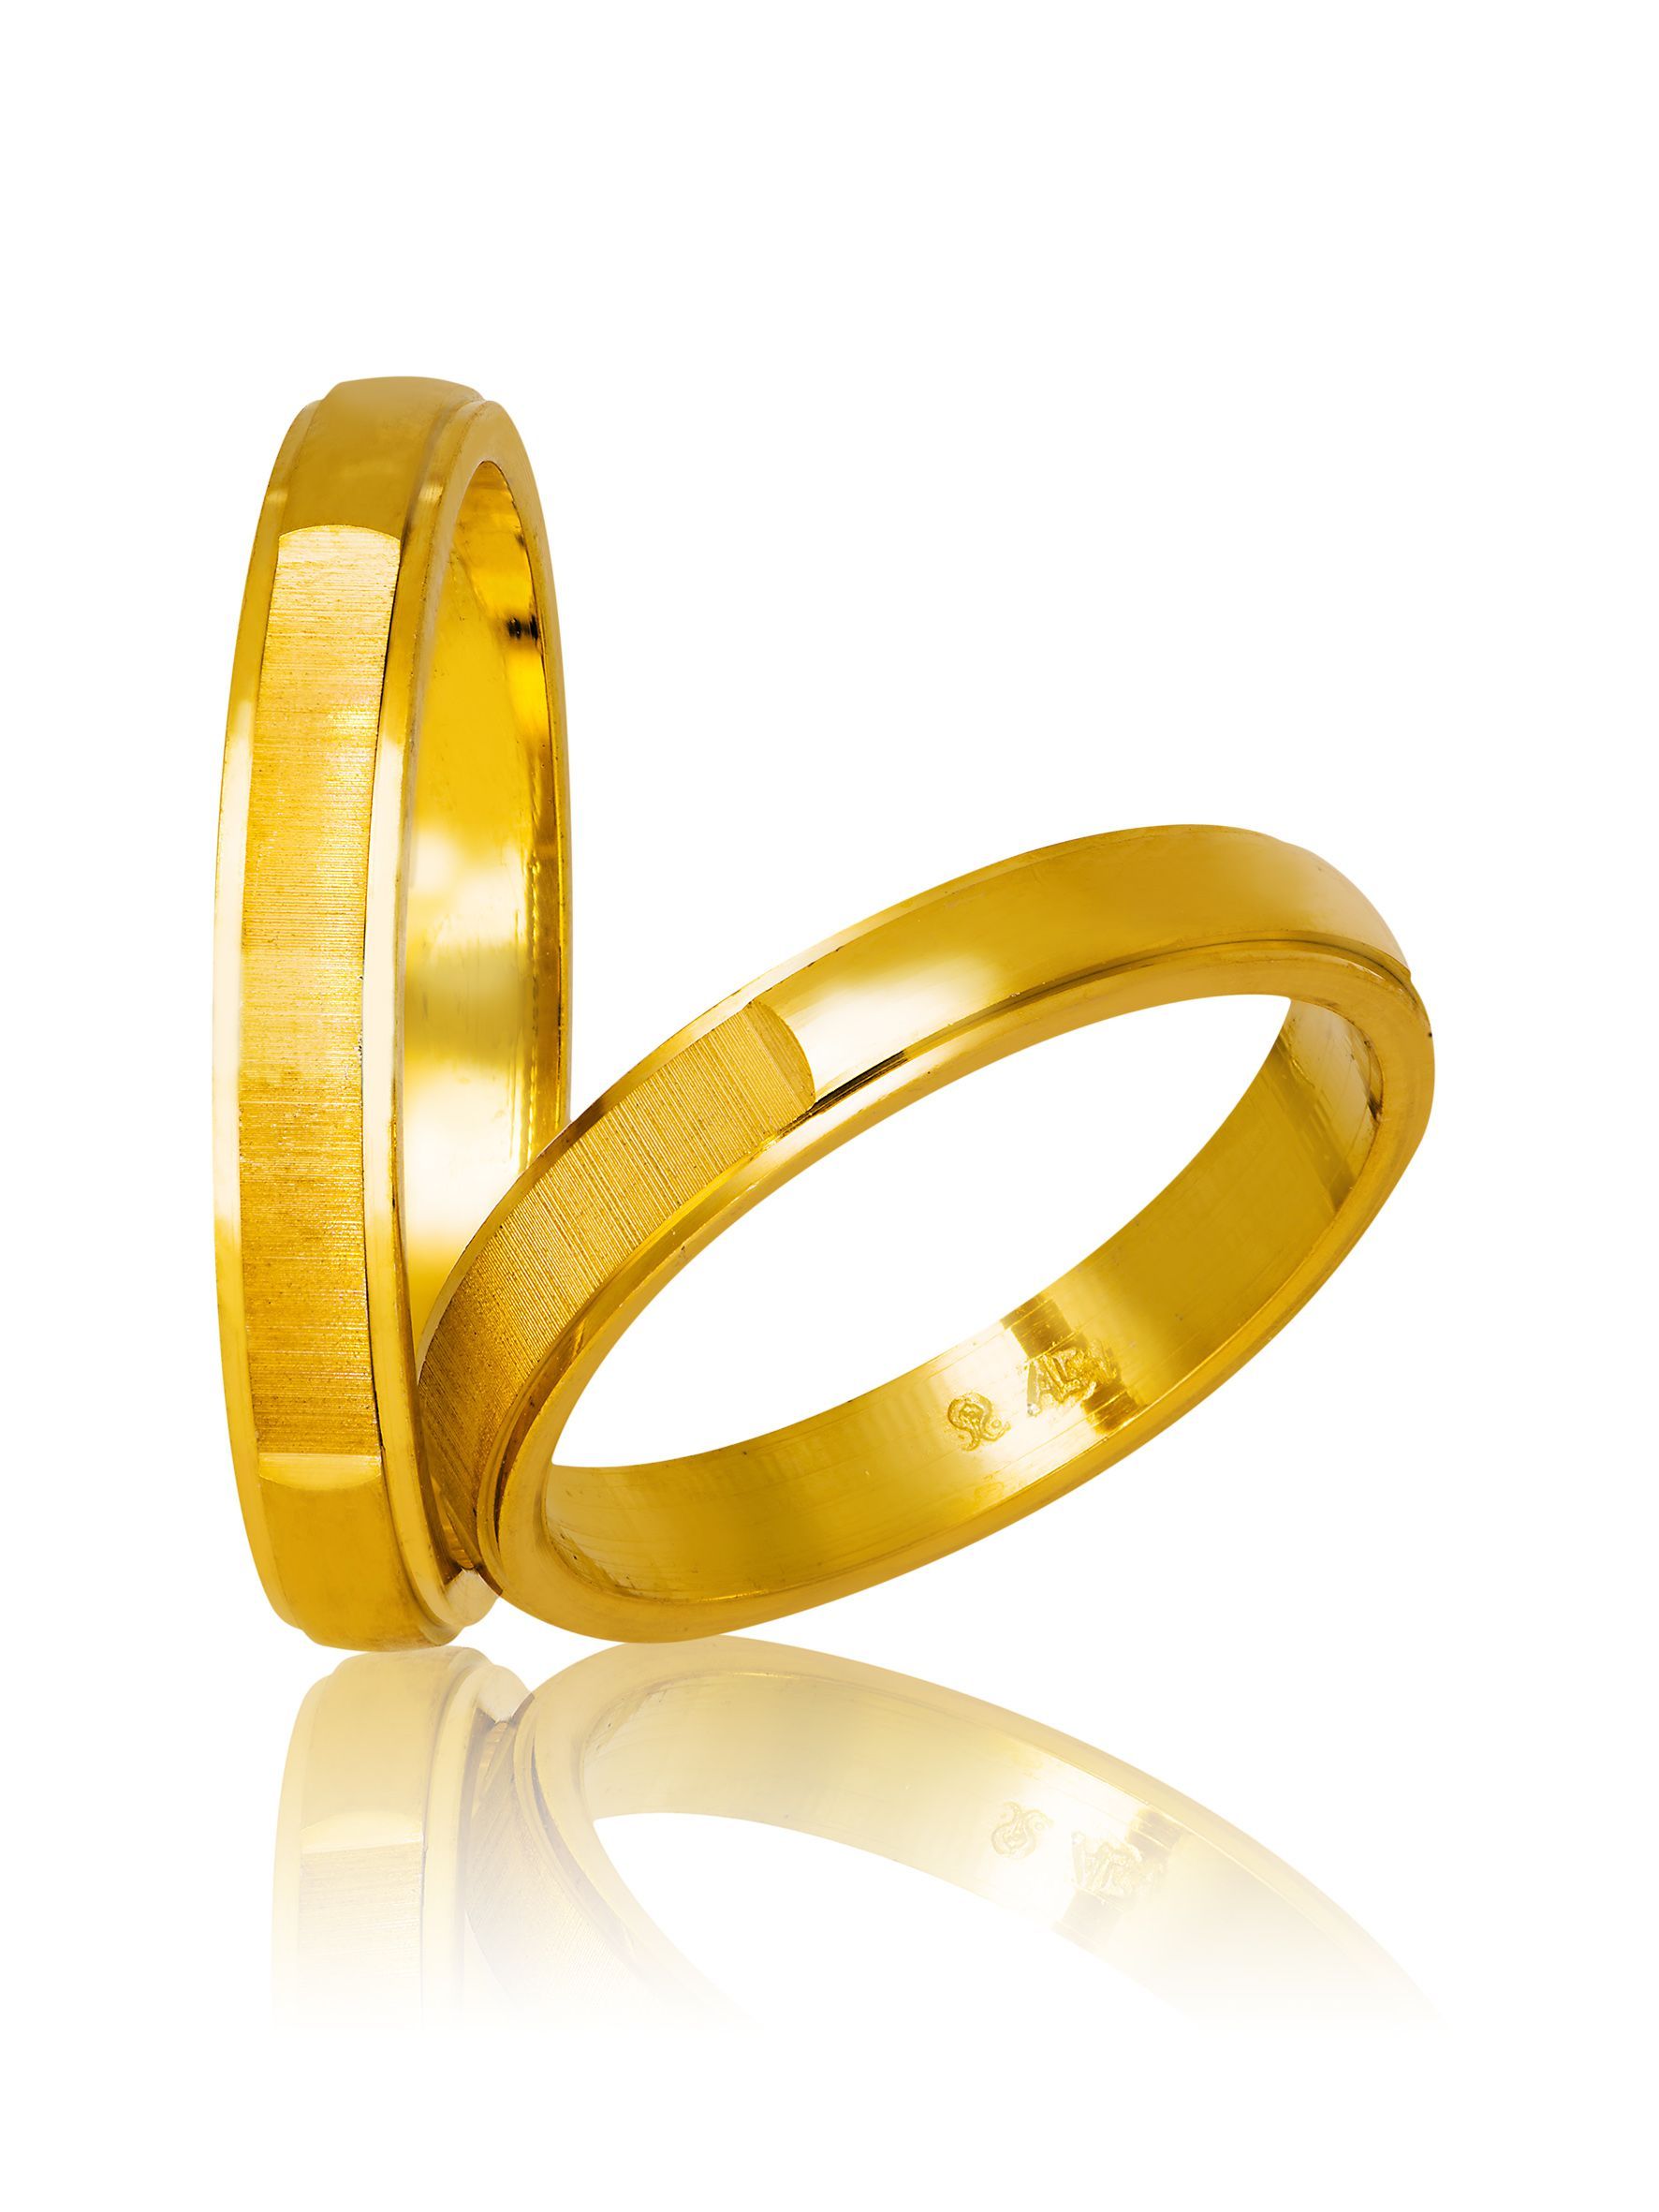 Golden wedding rings 3.5mm ( code 715)